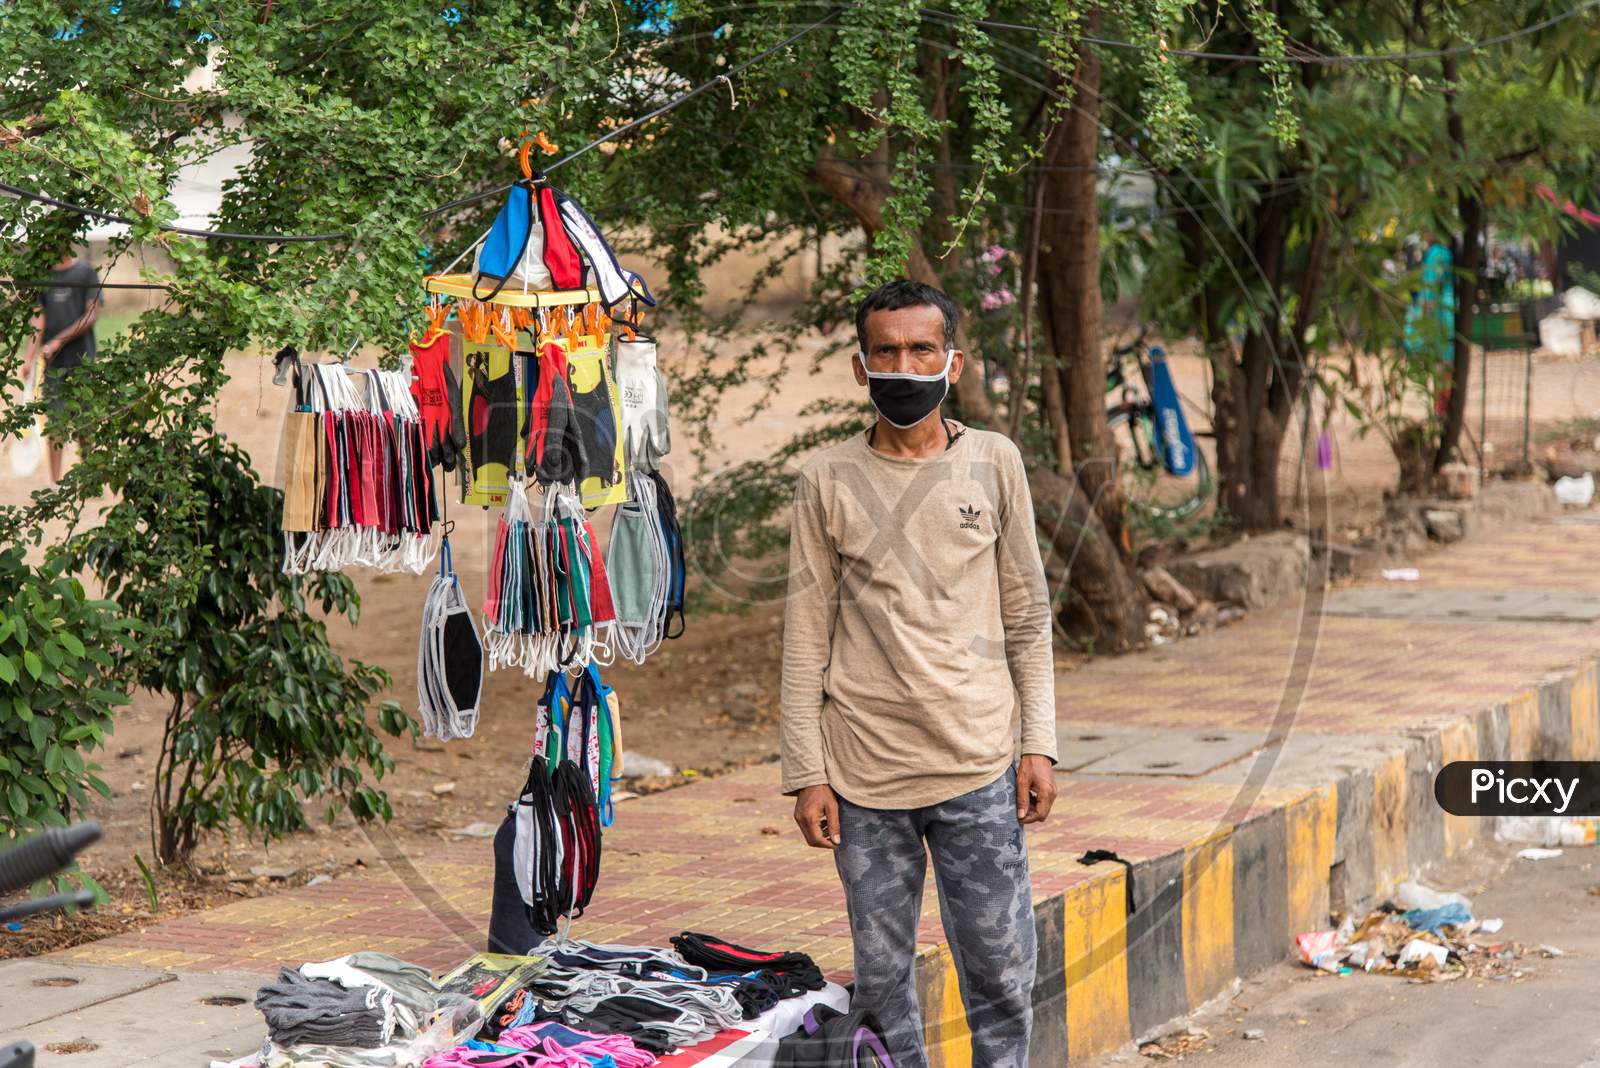 Selling masks on street